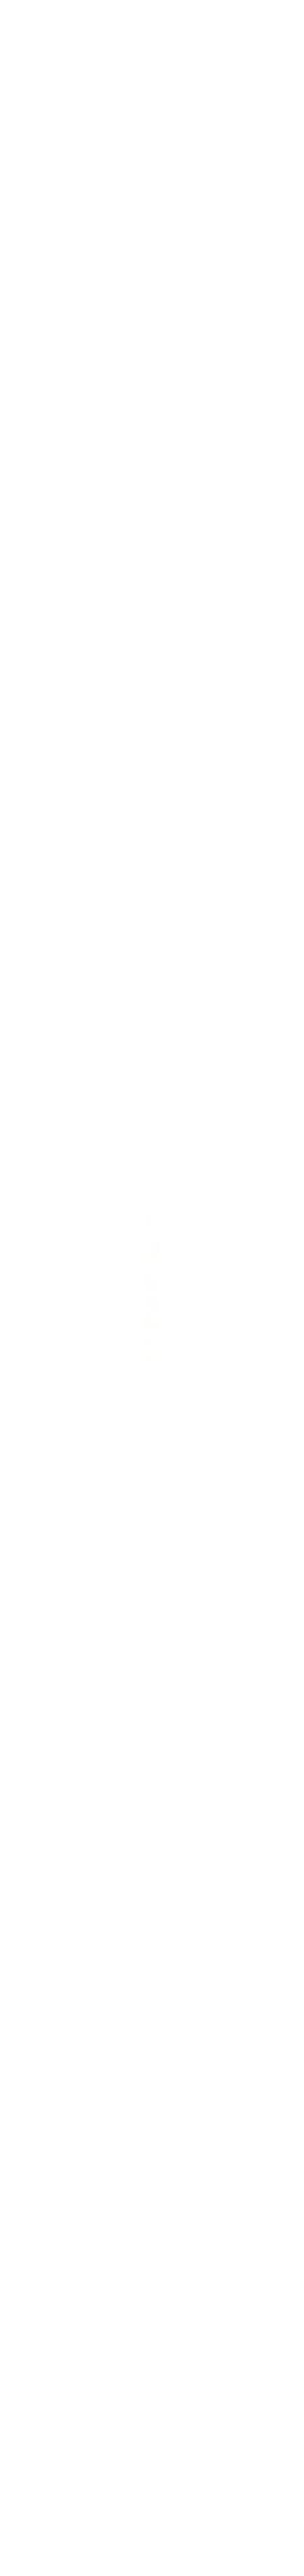 Yami-Yami ВИА Ошейник капроновый, цветной с капсулой, 23-38*1см (011111), 0,15 кг, 18255